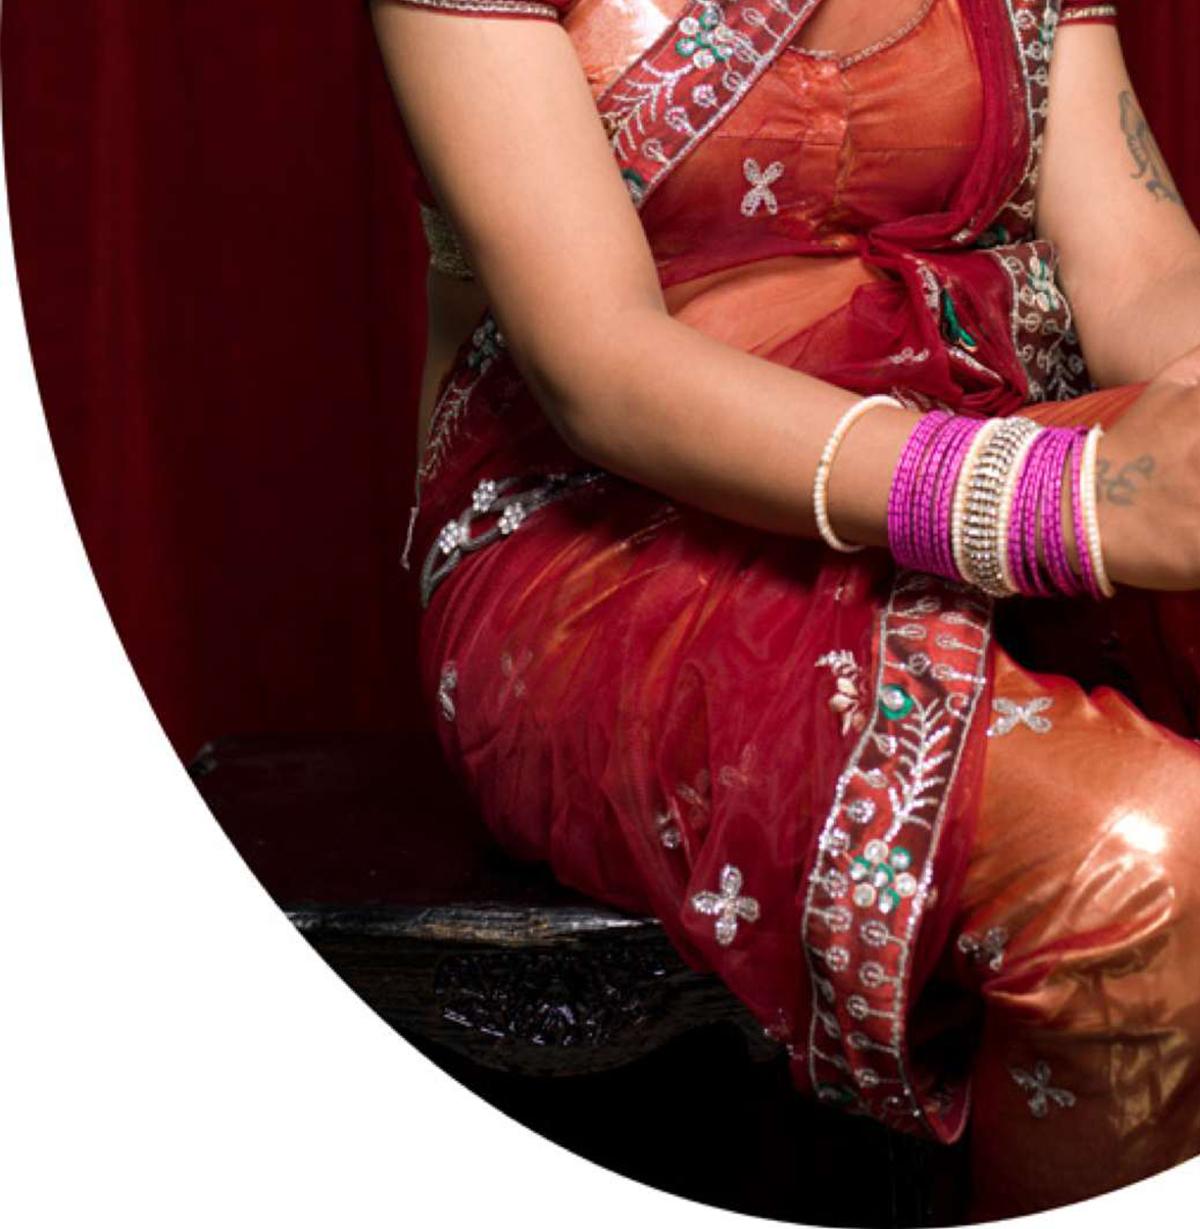 Shreya, 2013 von Jill Peters
Aus der Reihe Das dritte Geschlecht in Indien
Archivierungs-Pigmentdruck
Größe: 60 in H x 40 in W
Auflage von 3
Ungerahmt

Der Begriff 